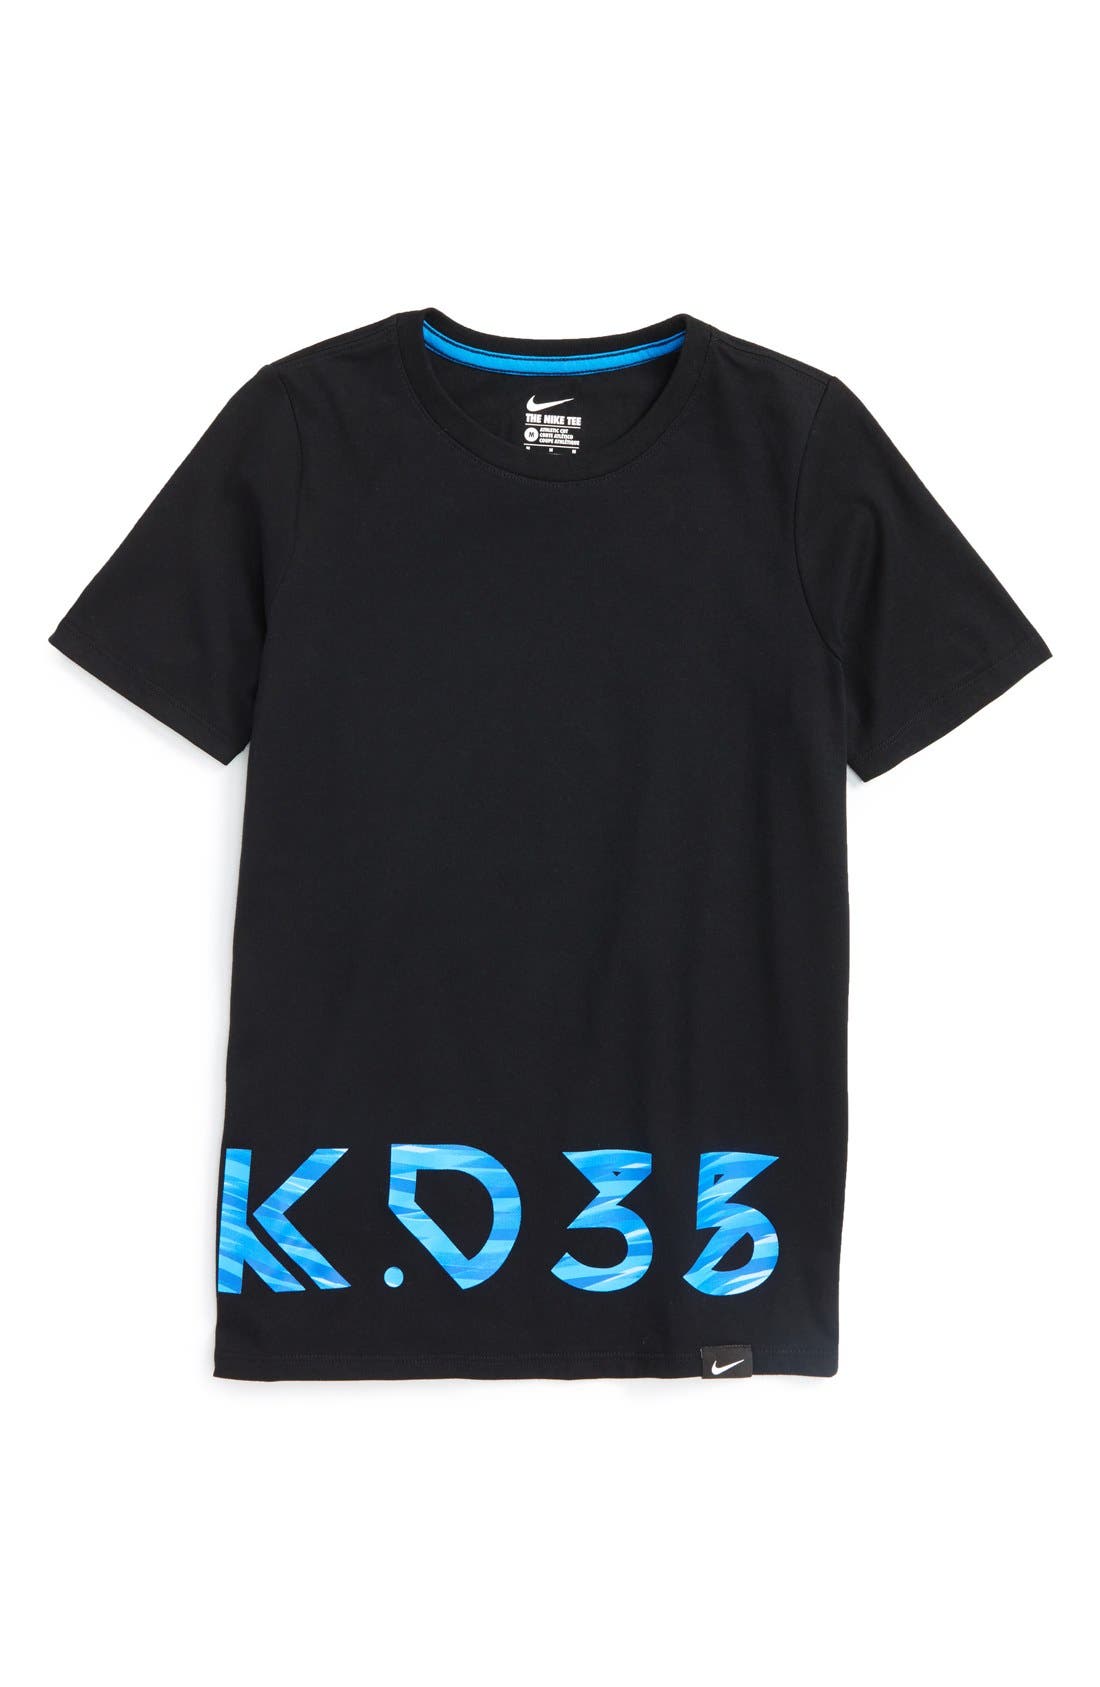 kd 35 t shirt